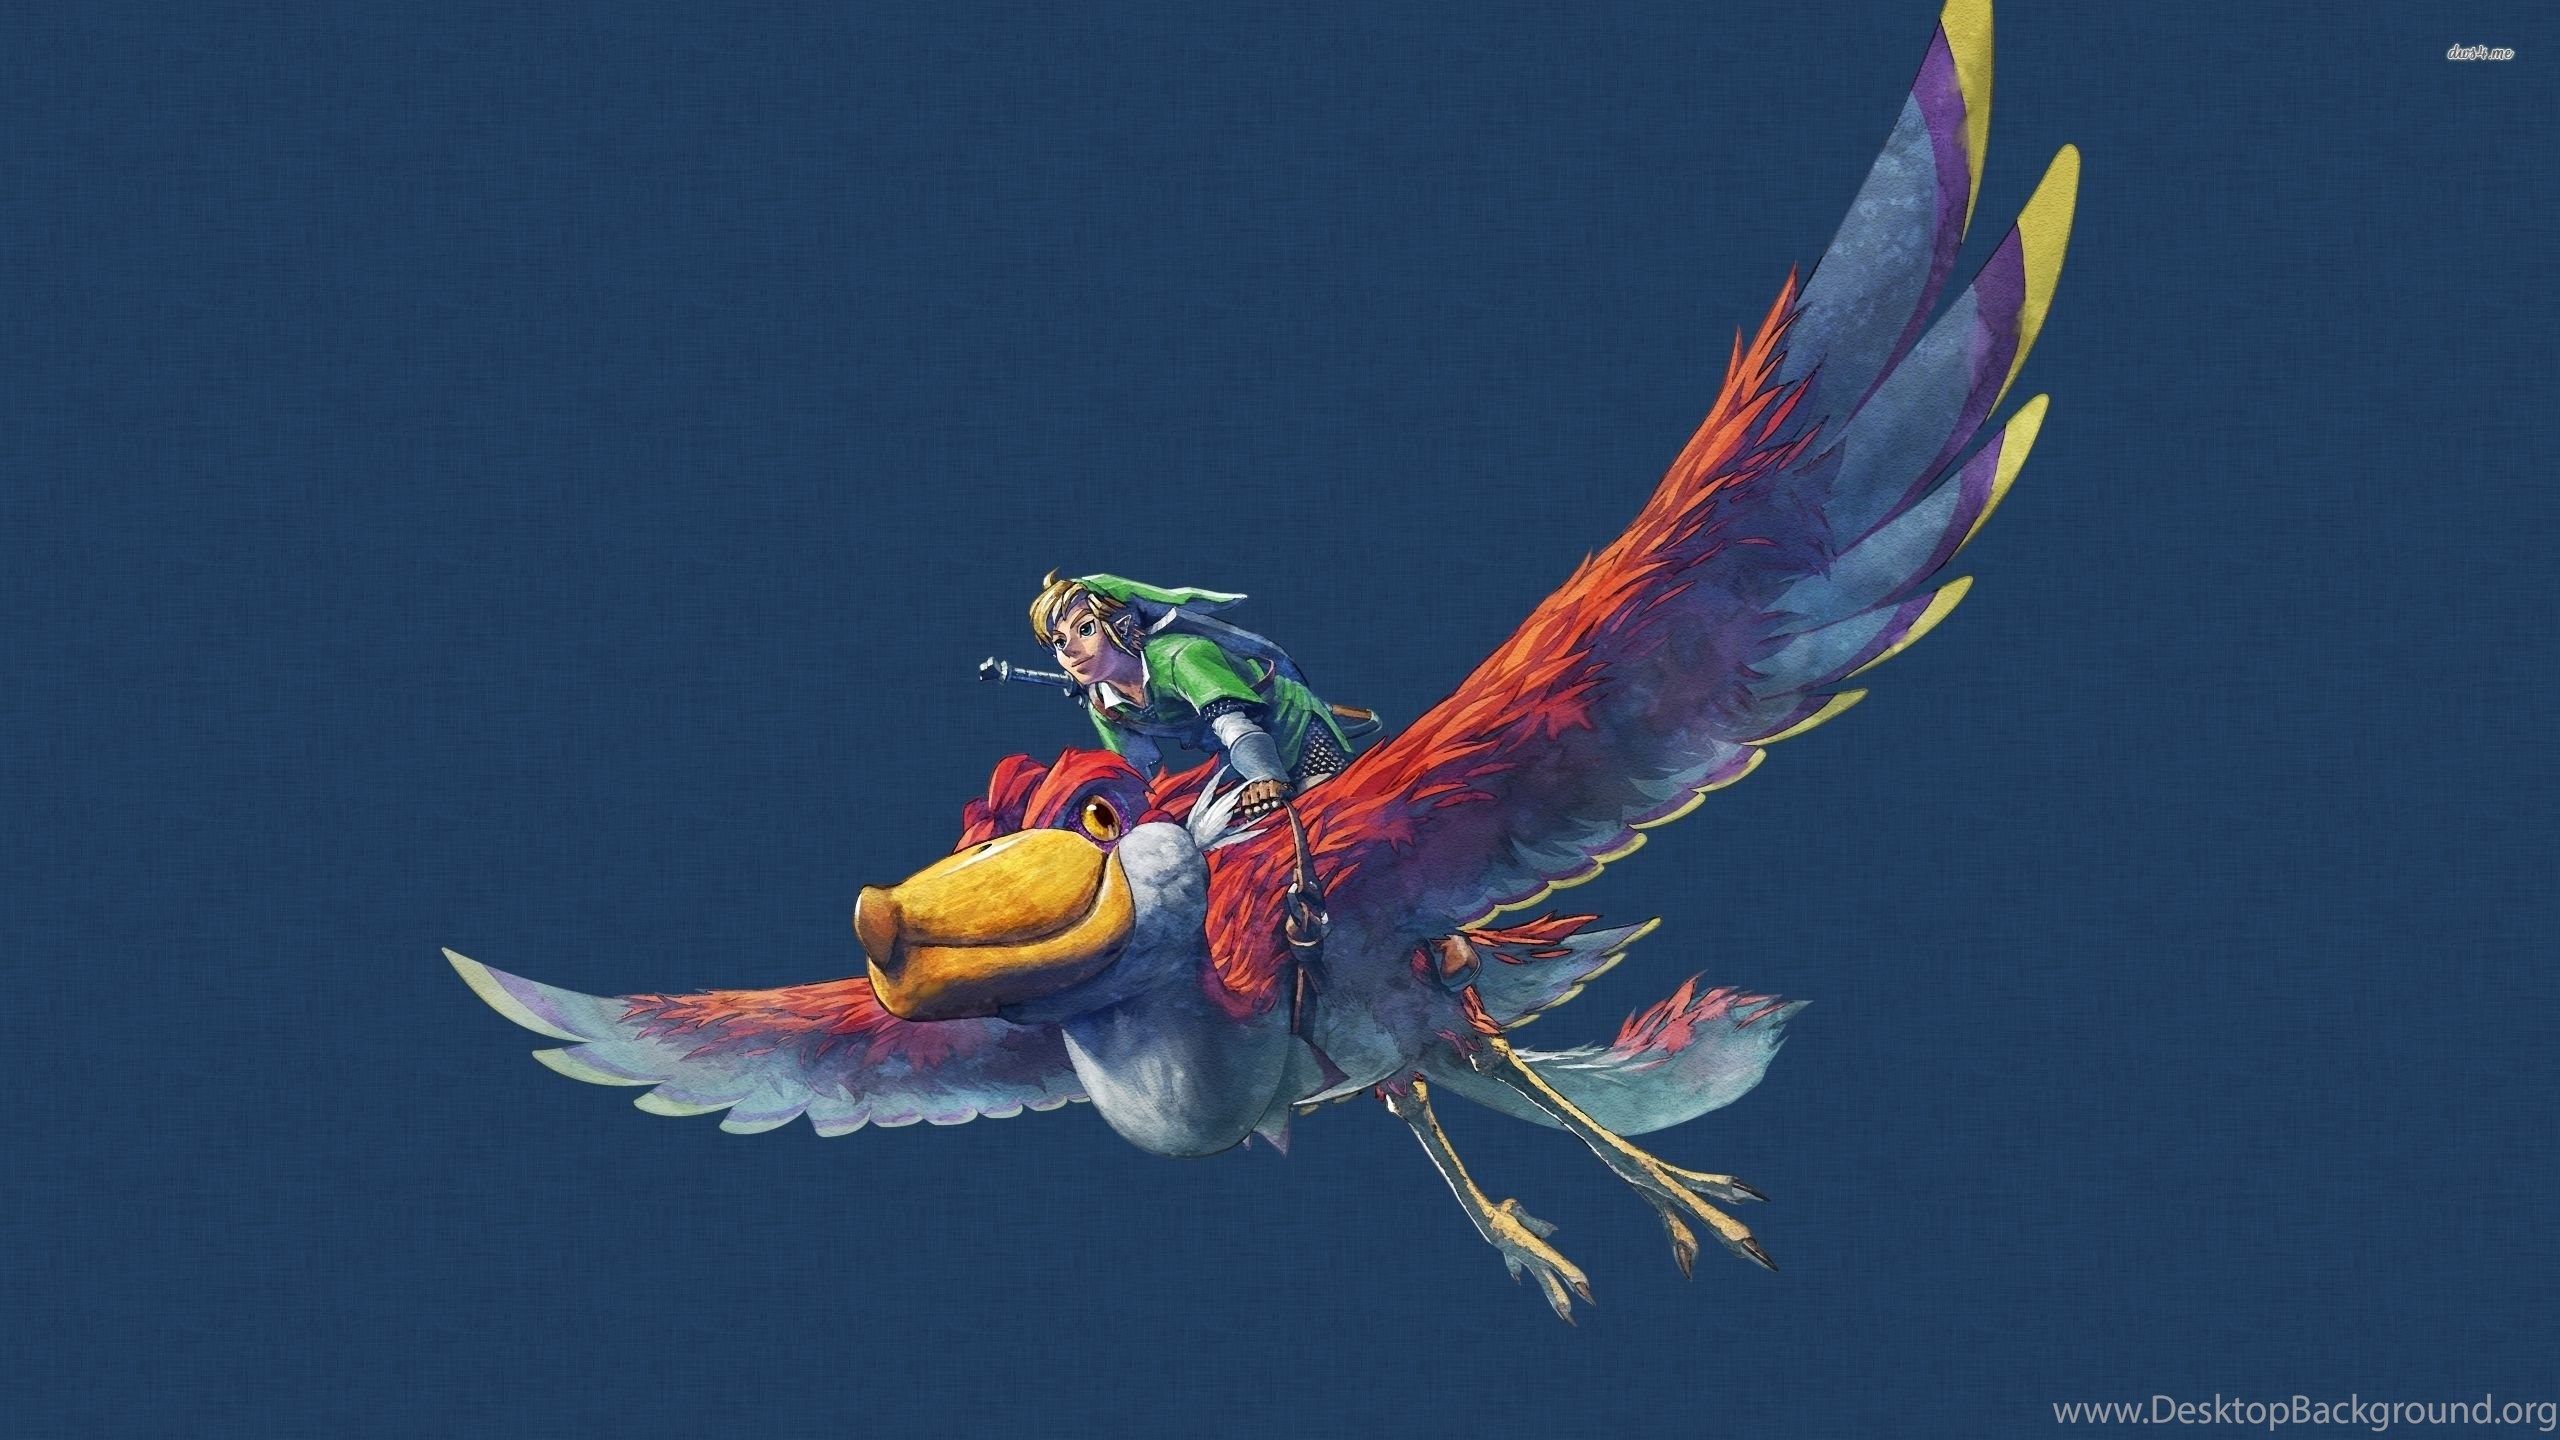 The Legend Of Zelda: Skyward Sword Wallpaper Game Wallpaper. Desktop Background